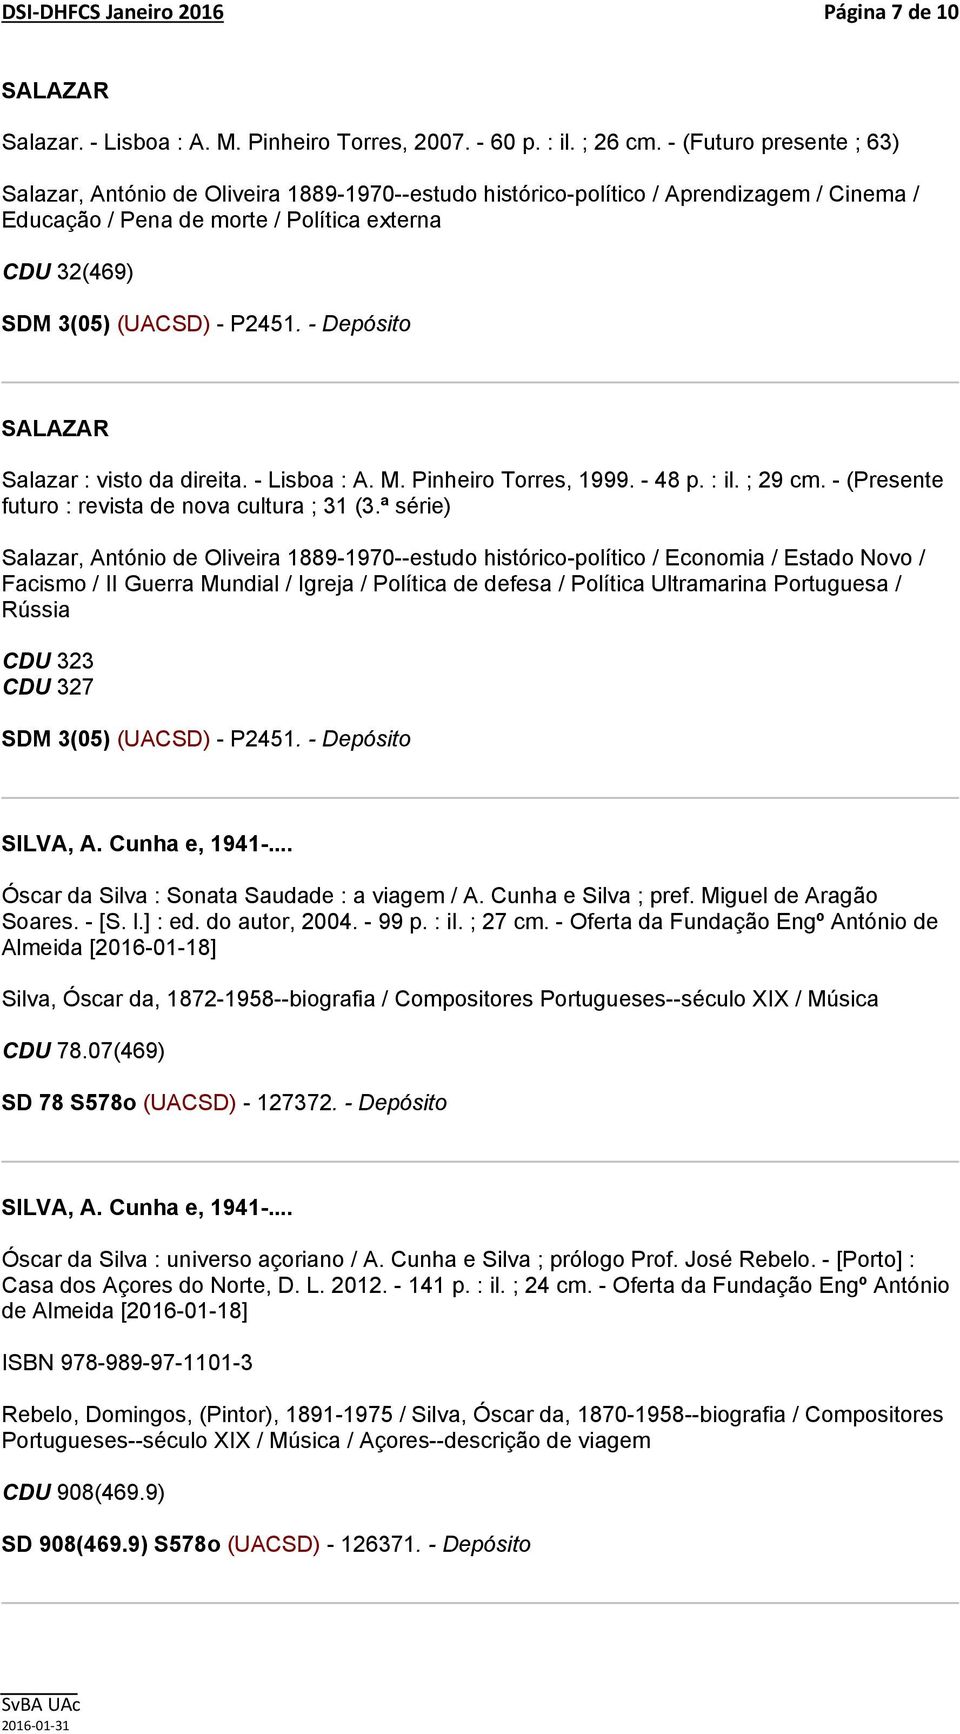 direita. - Lisboa : A. M. Pinheiro Torres, 1999. - 48 p. : il. ; 29 cm. - (Presente futuro : revista de nova cultura ; 31 (3.